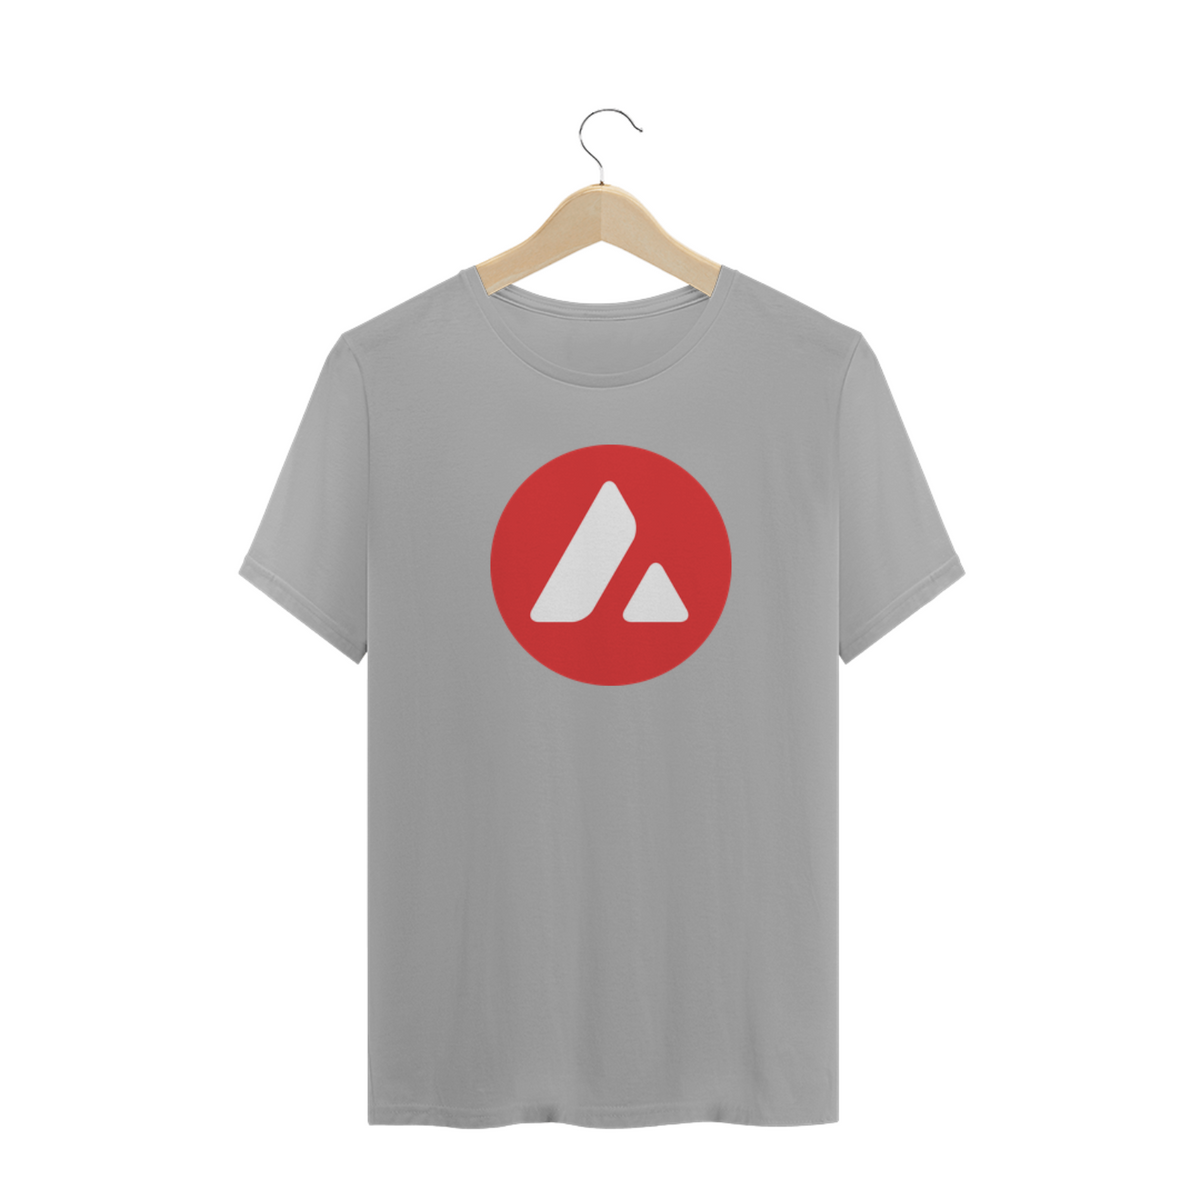 Nome do produto: Criptos - Camisa AVAX